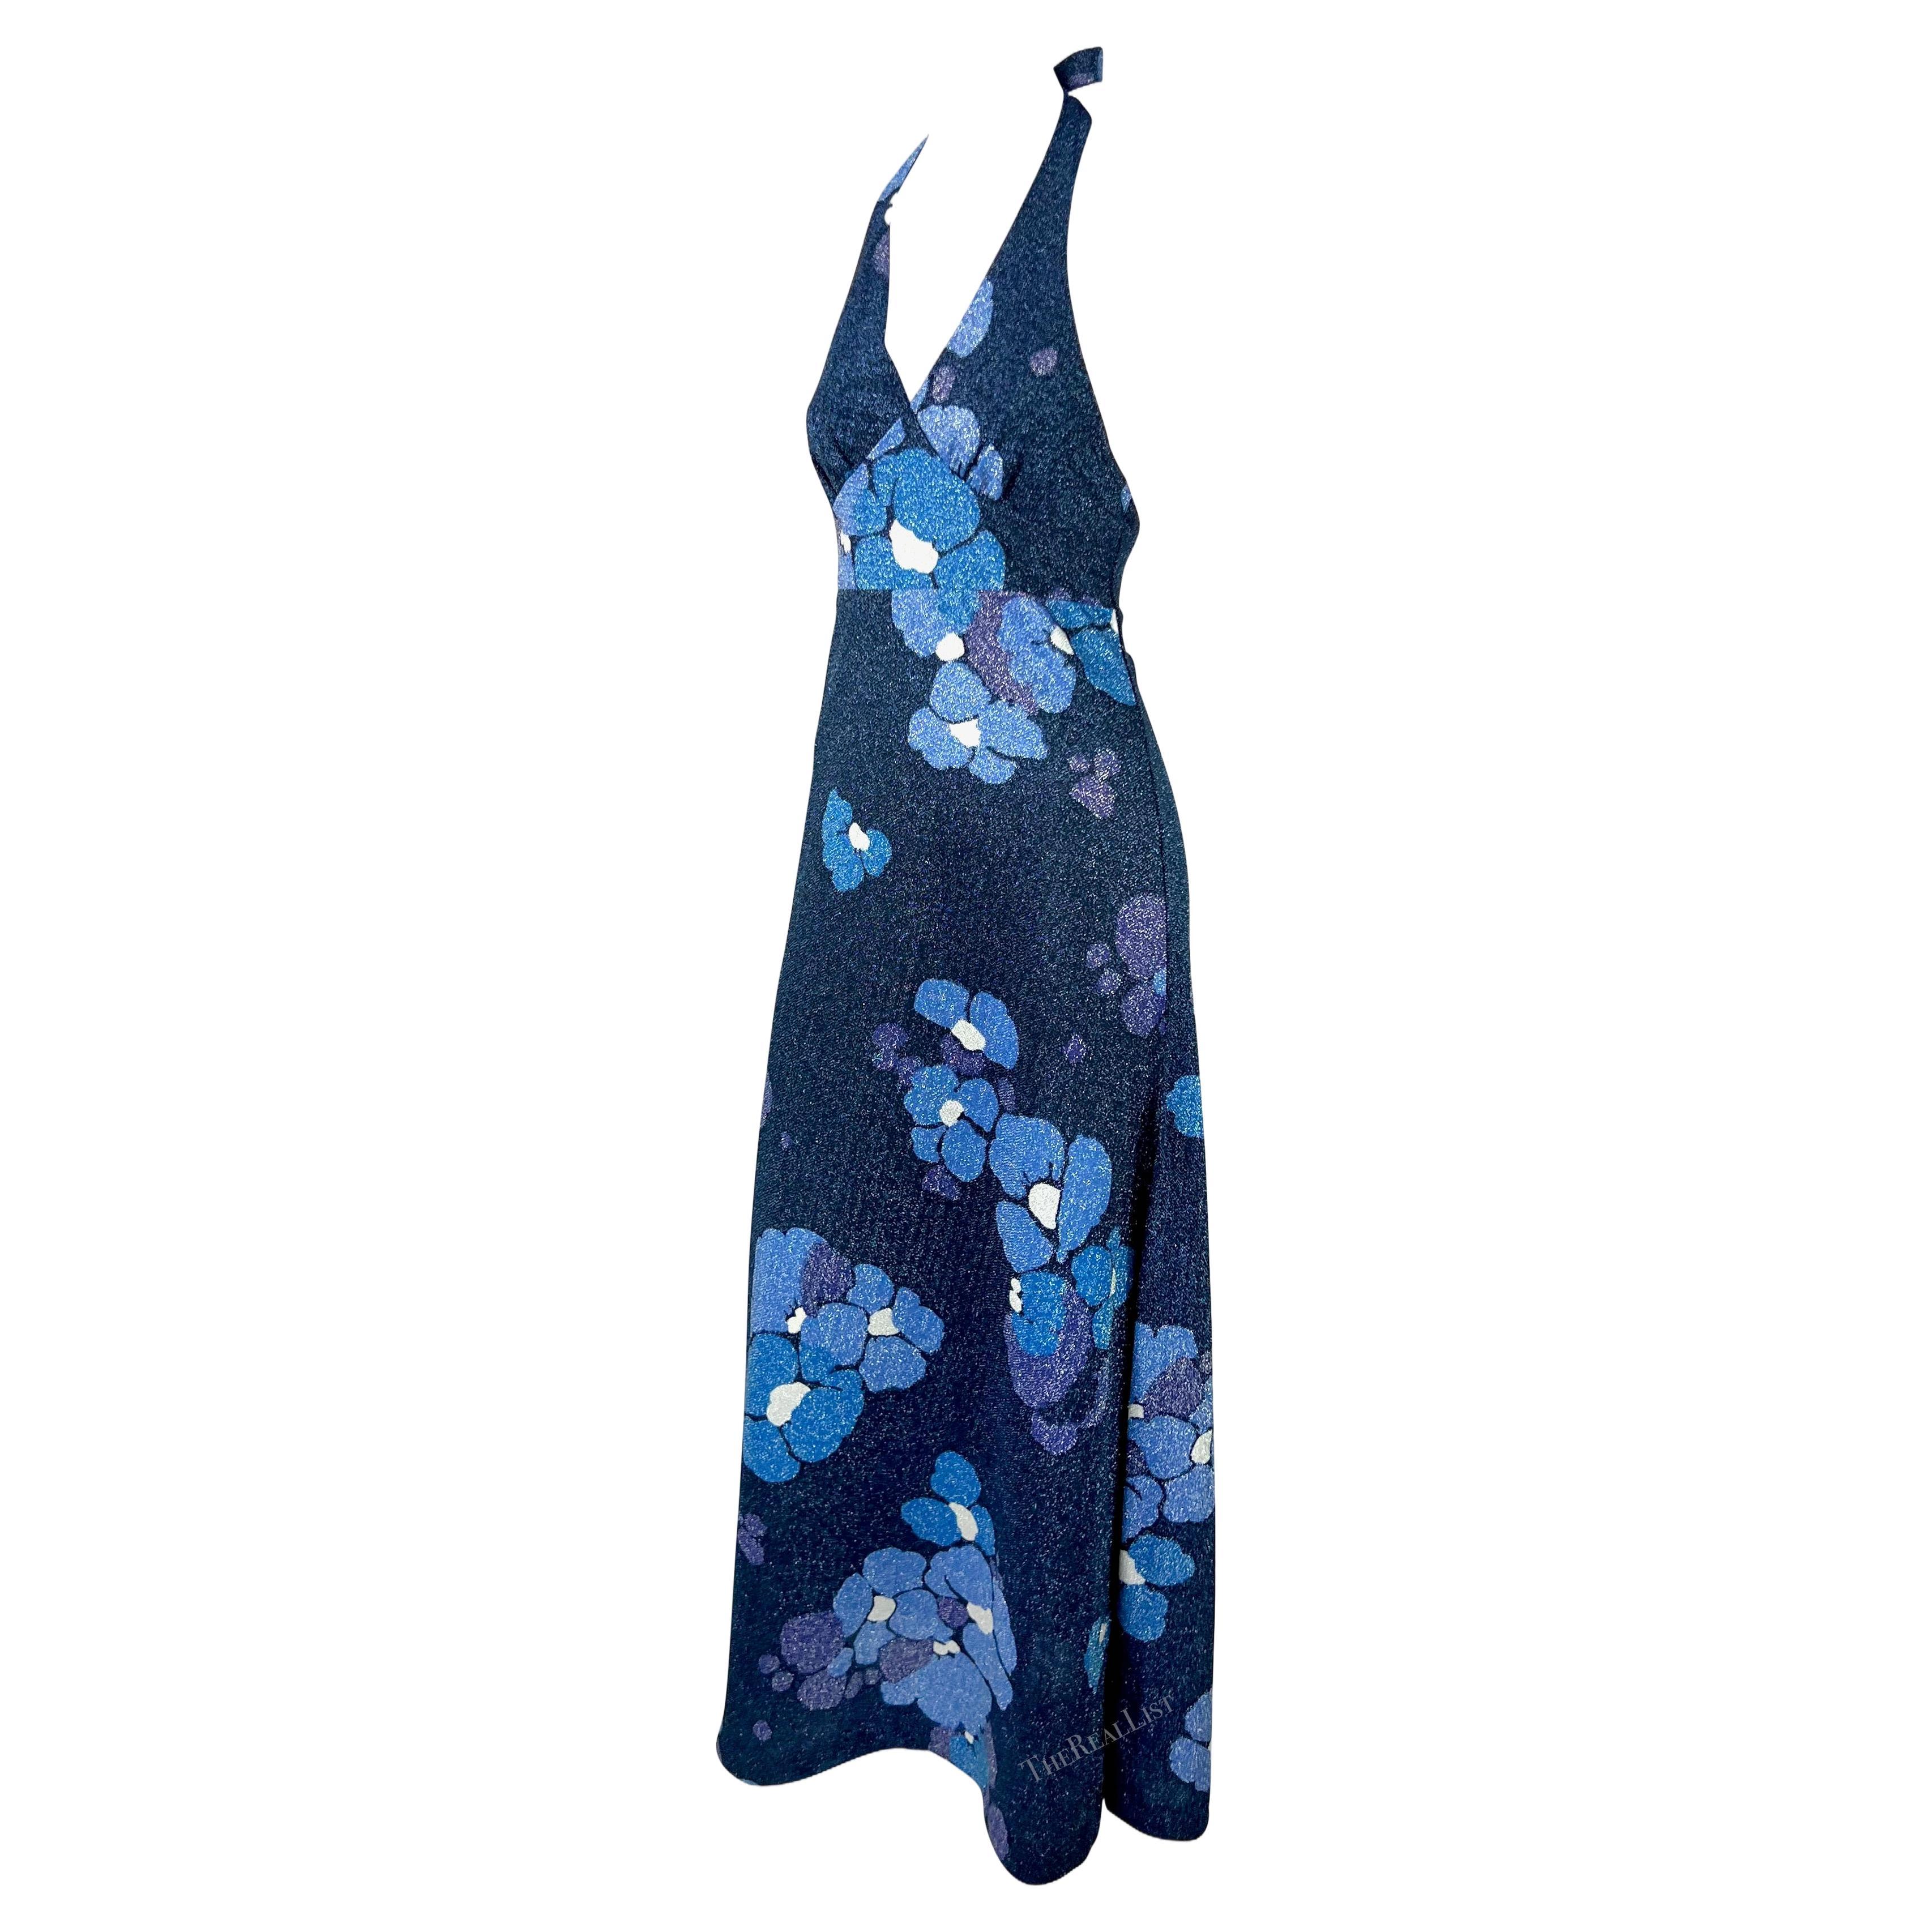 Wir präsentieren ein schillerndes blaues, geblümtes Neckholder-Kleid von Paco Rabanne aus den 1970er Jahren. Dieses leuchtende Kleid aus Lurex ist mit einem metallisch blauen Blumenmuster durchzogen. Das bodenlange Modell hat einen tiefen